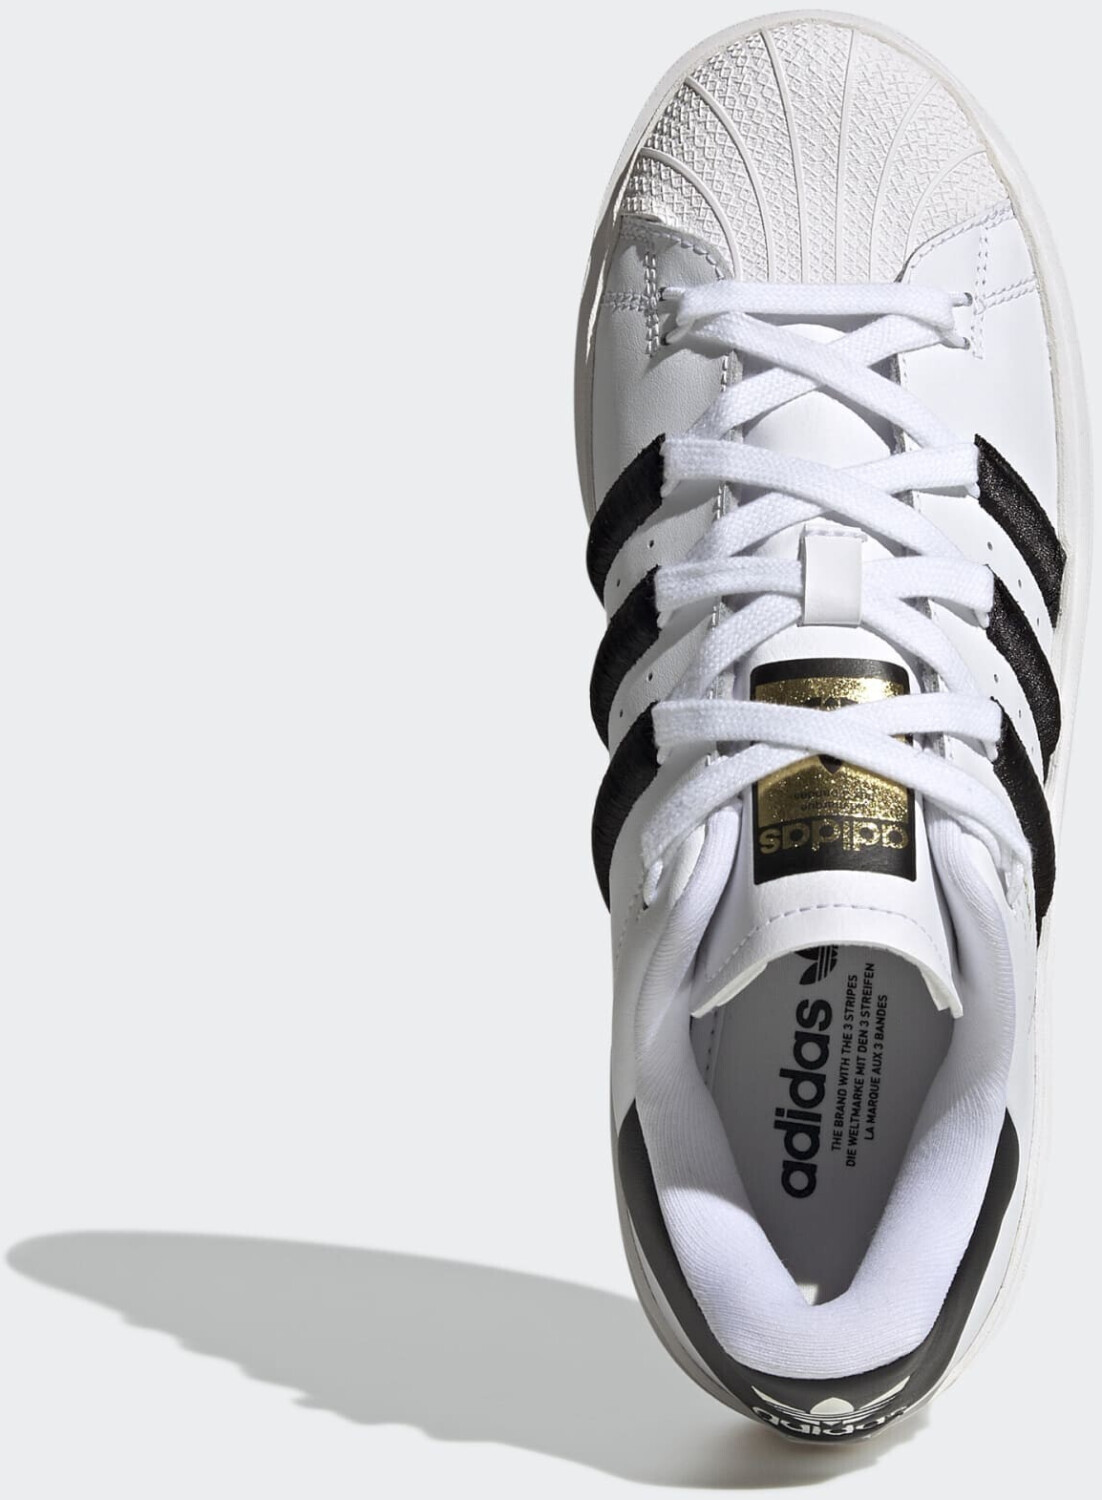 Adidas Superstar Bonega Women idealo white/core a | € cloud e (oggi) Migliori offerte prezzi su 72,00 metallic black/gold